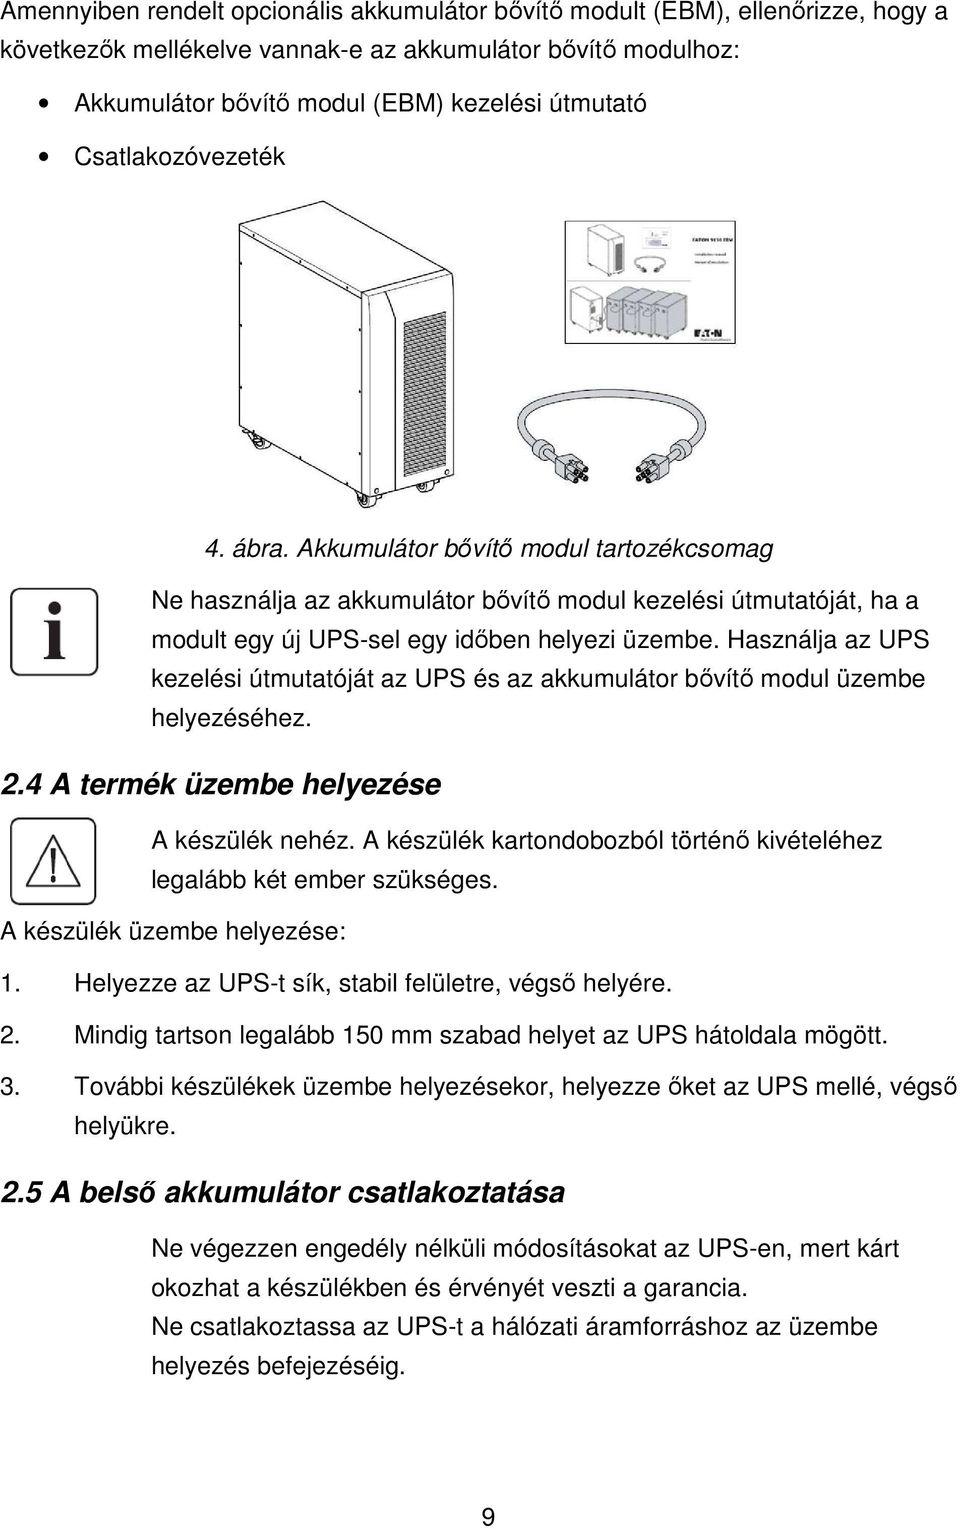 Használja az UPS kezelési útmutatóját az UPS és az akkumulátor bıvítı modul üzembe helyezéséhez. 2.4 A termék üzembe helyezése A készülék nehéz.